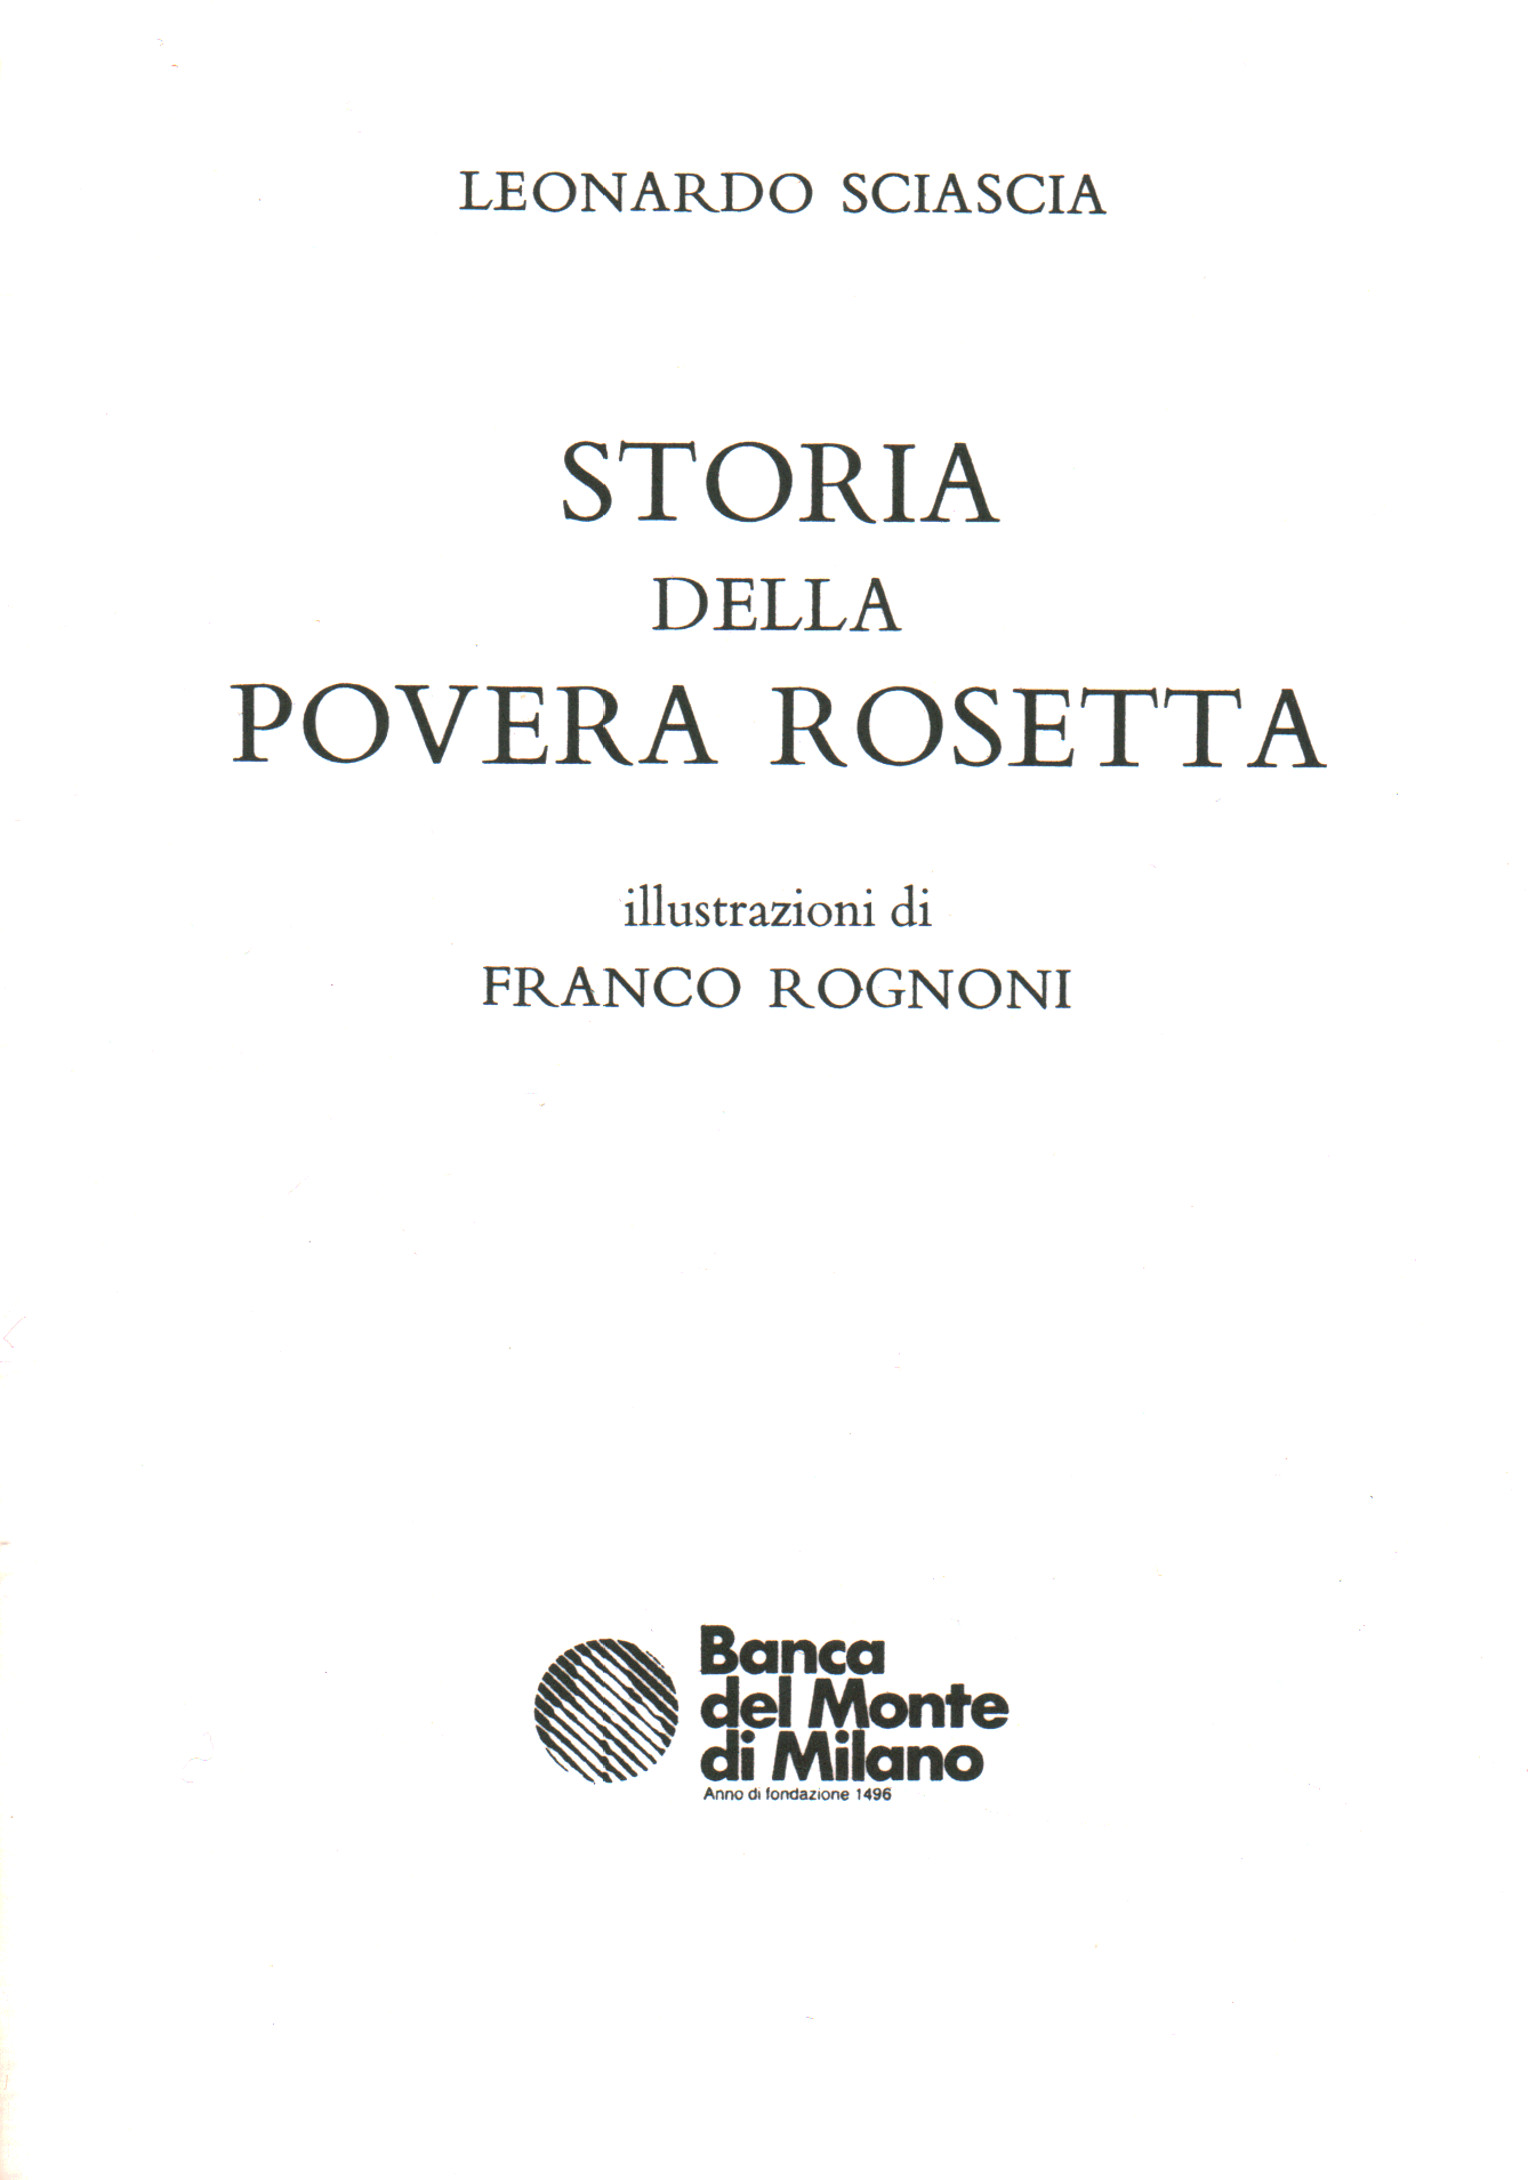 Geschichte der armen Rosetta